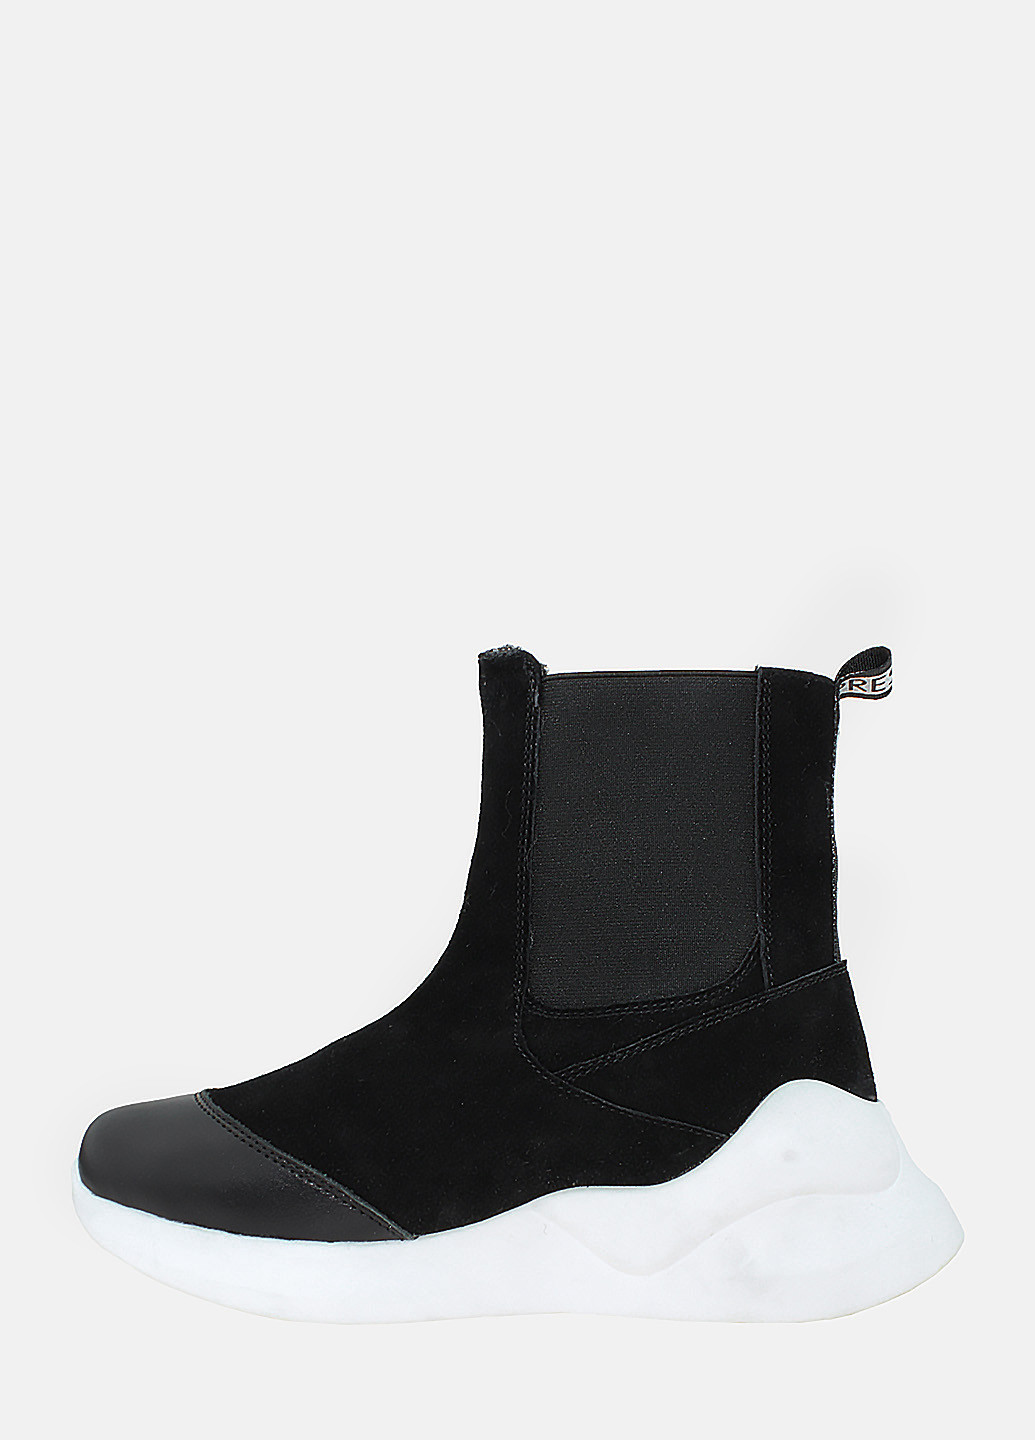 Зимние ботинки rdm208 черный Daragani из натуральной замши